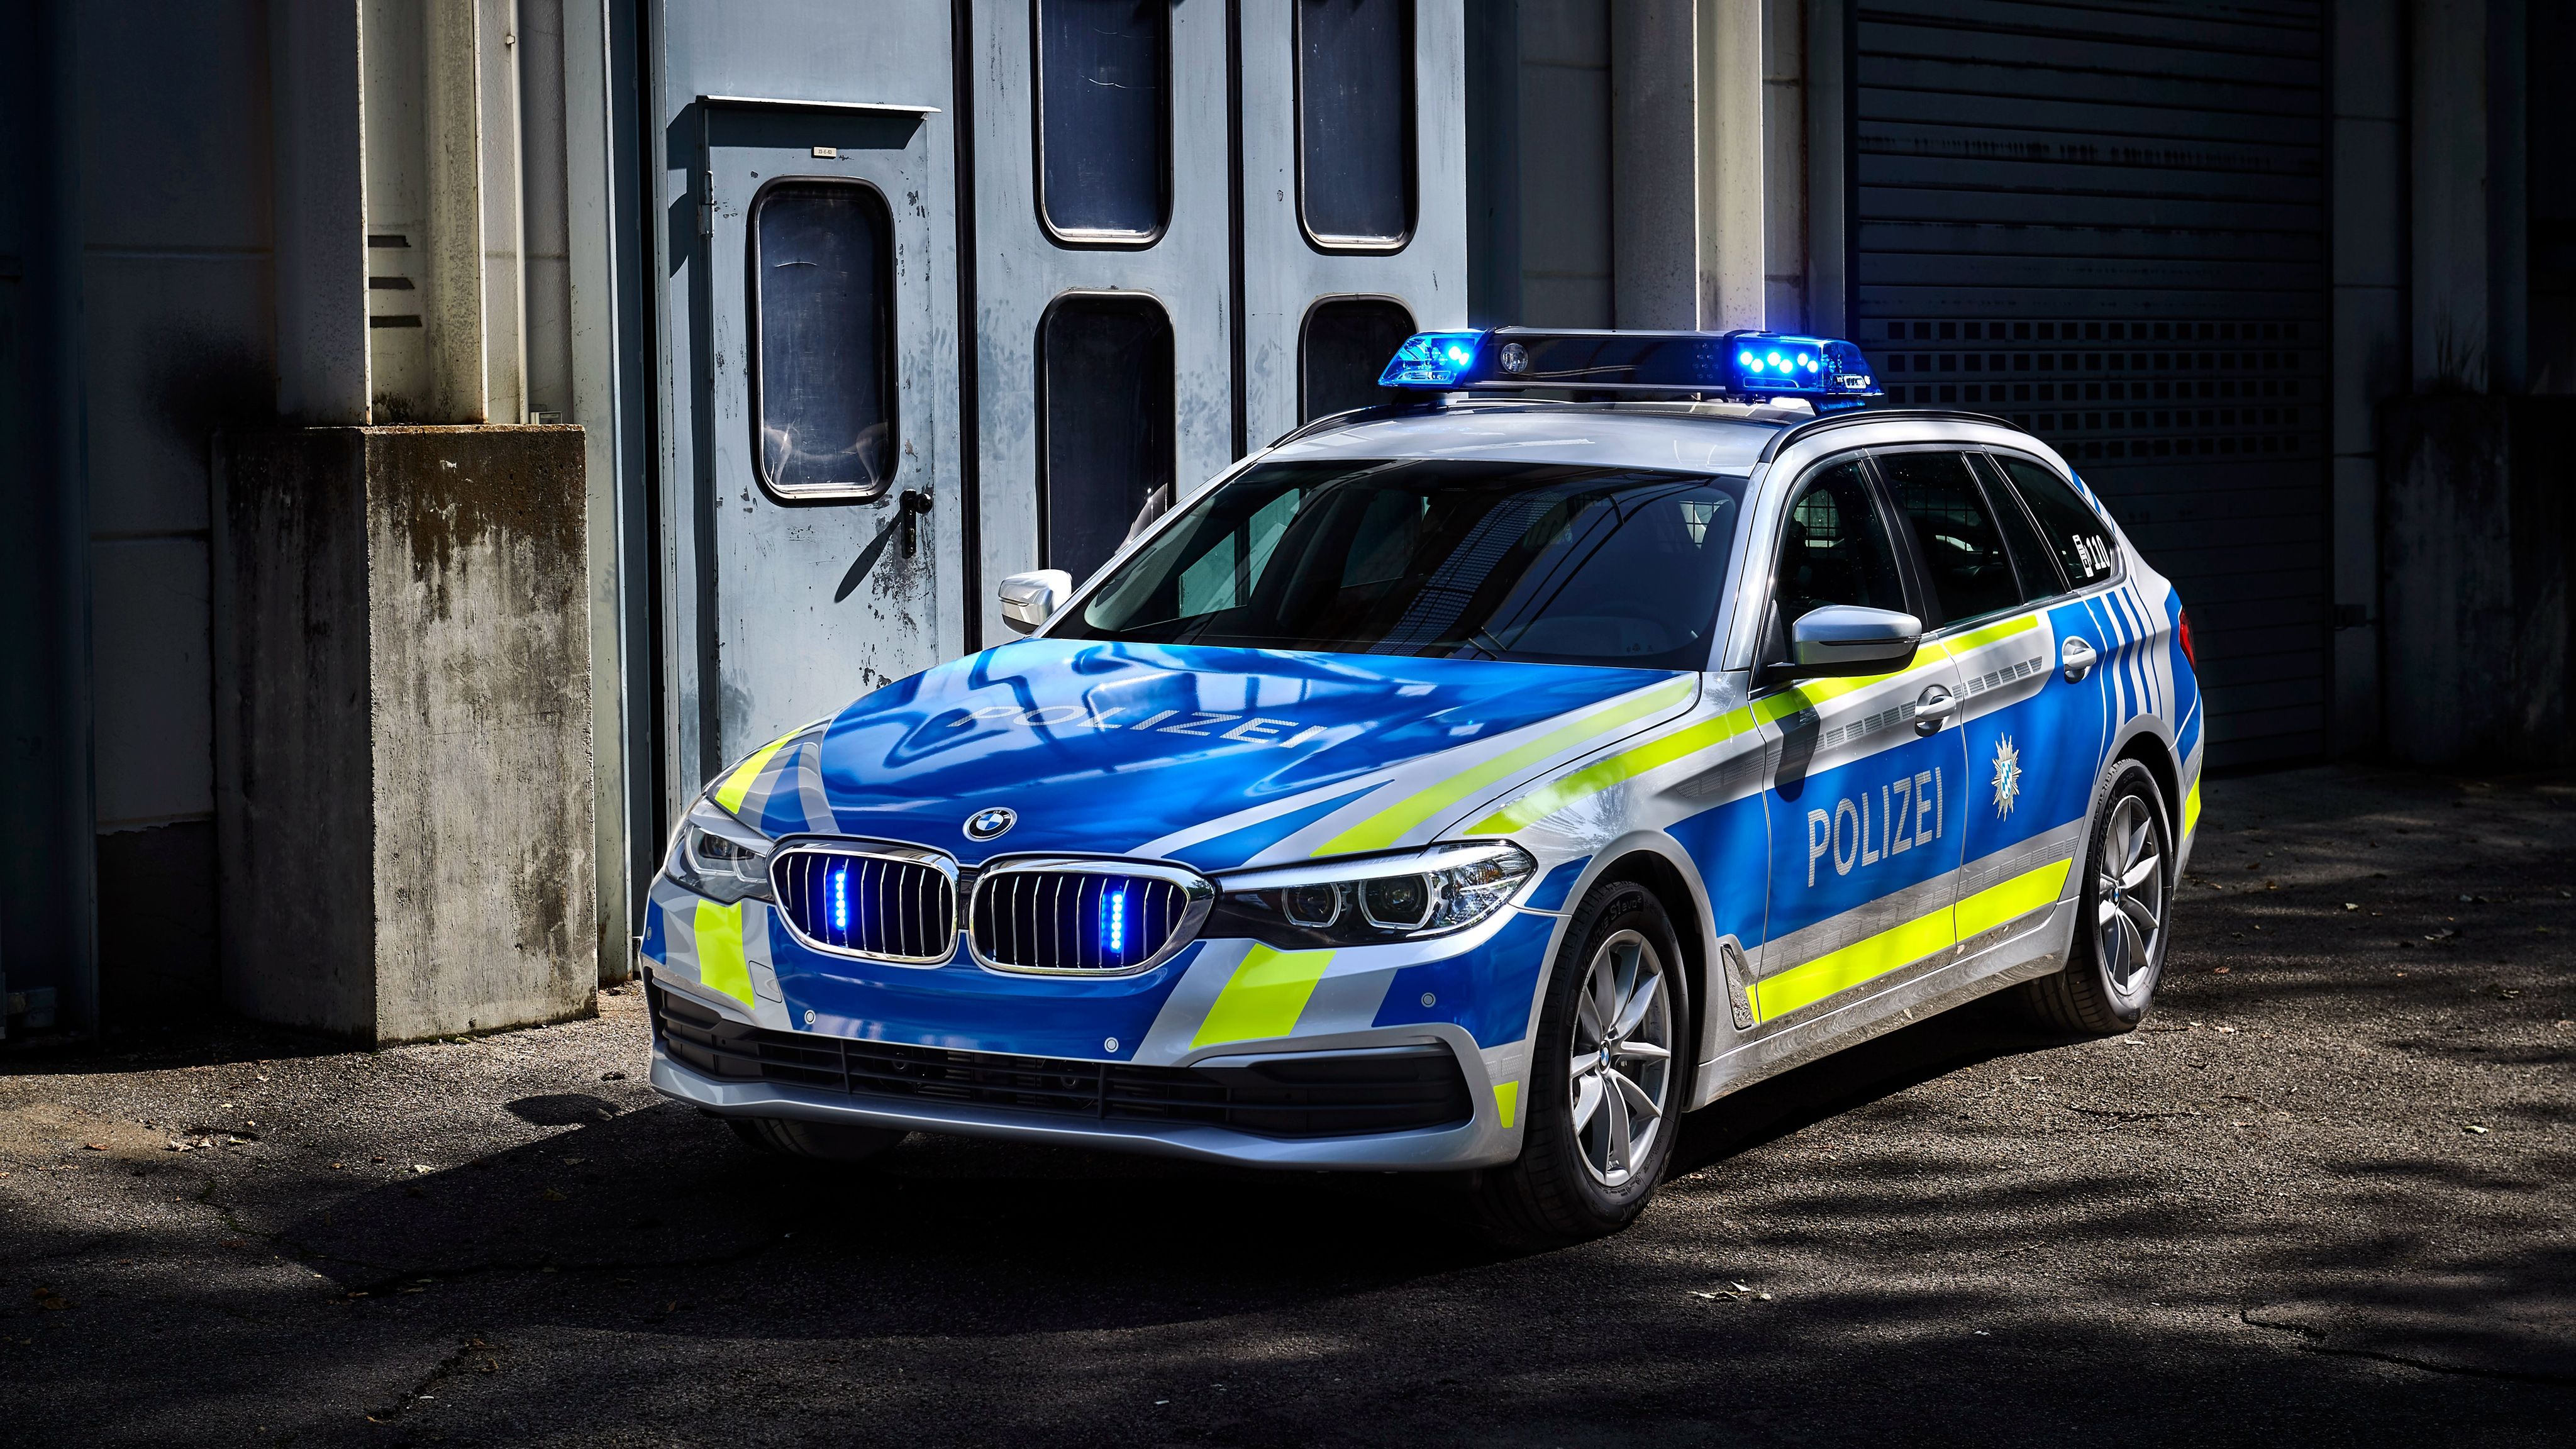 BMW 530d xDrive Touring Polizei 4K Wallpaper. HD Car